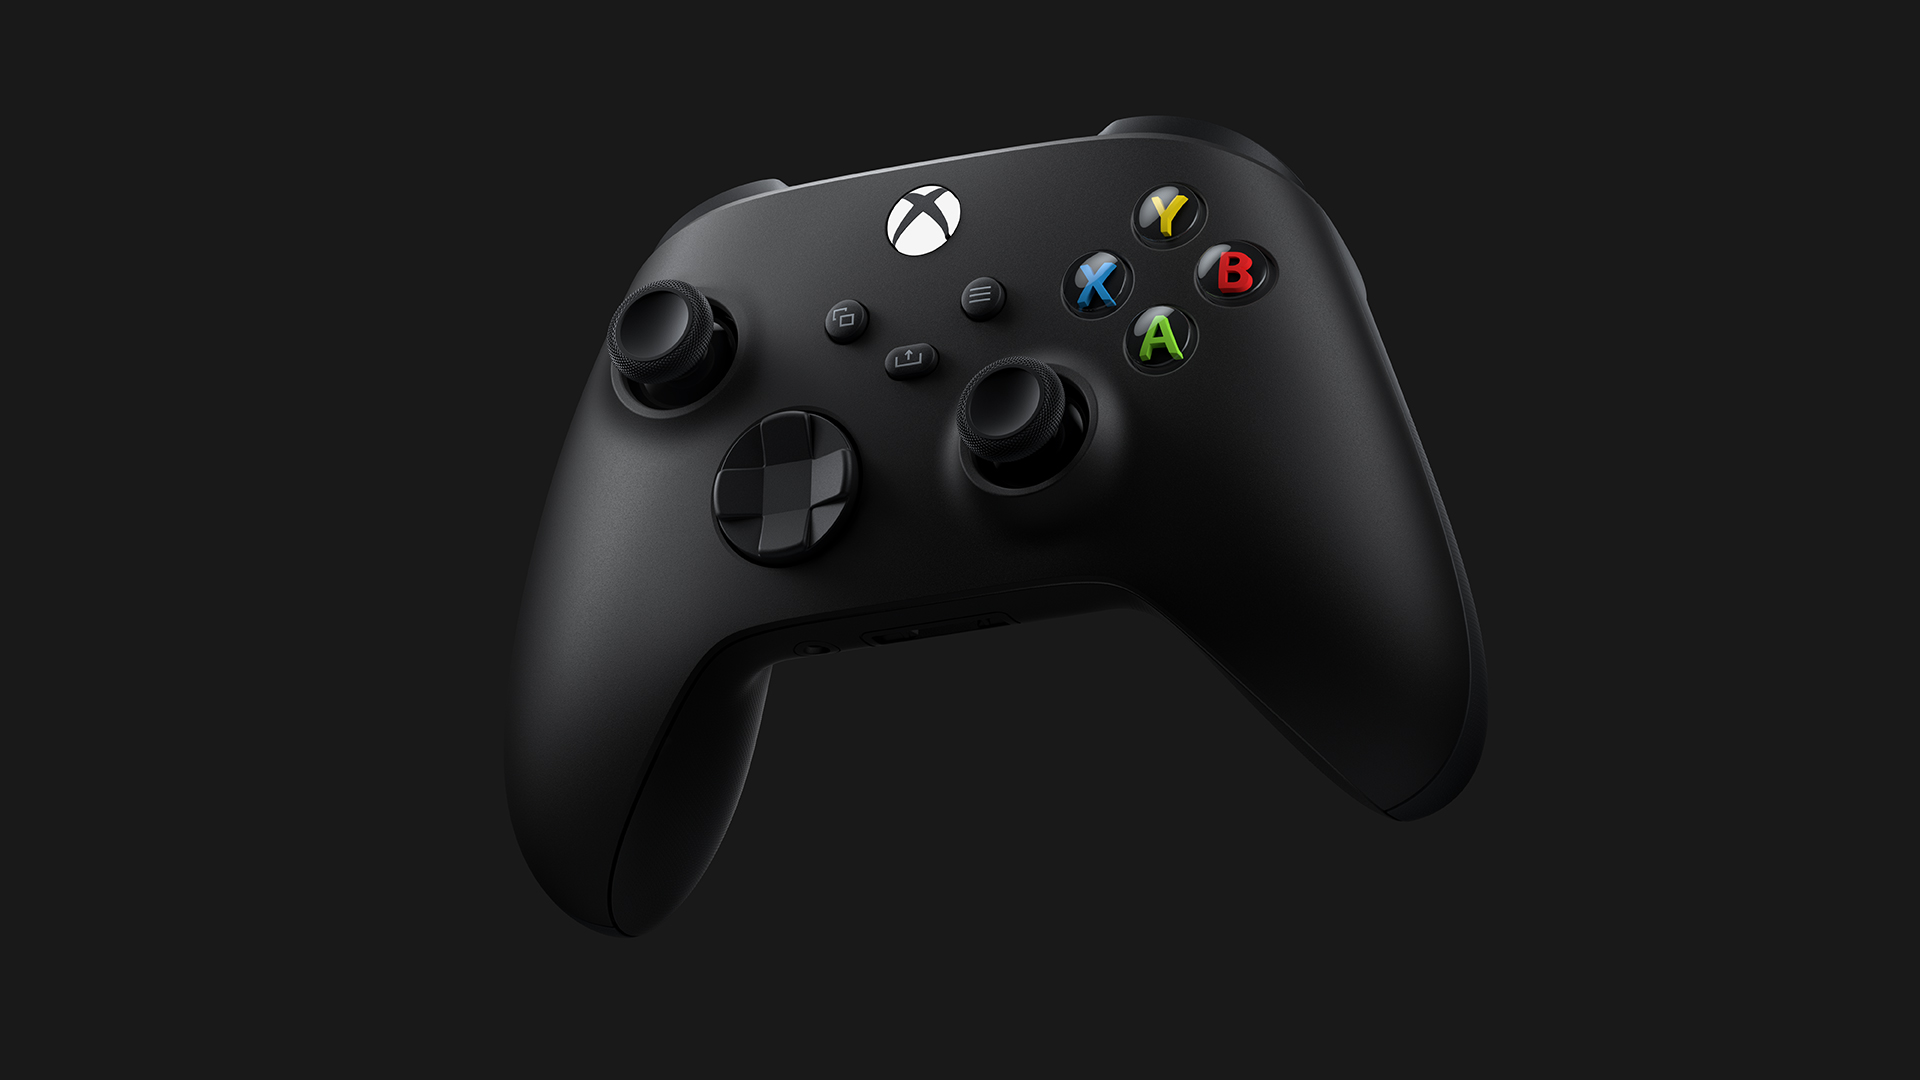 L'adaptateur sans fil PC pour manette Xbox One, le 12 novembre en France  (màj)